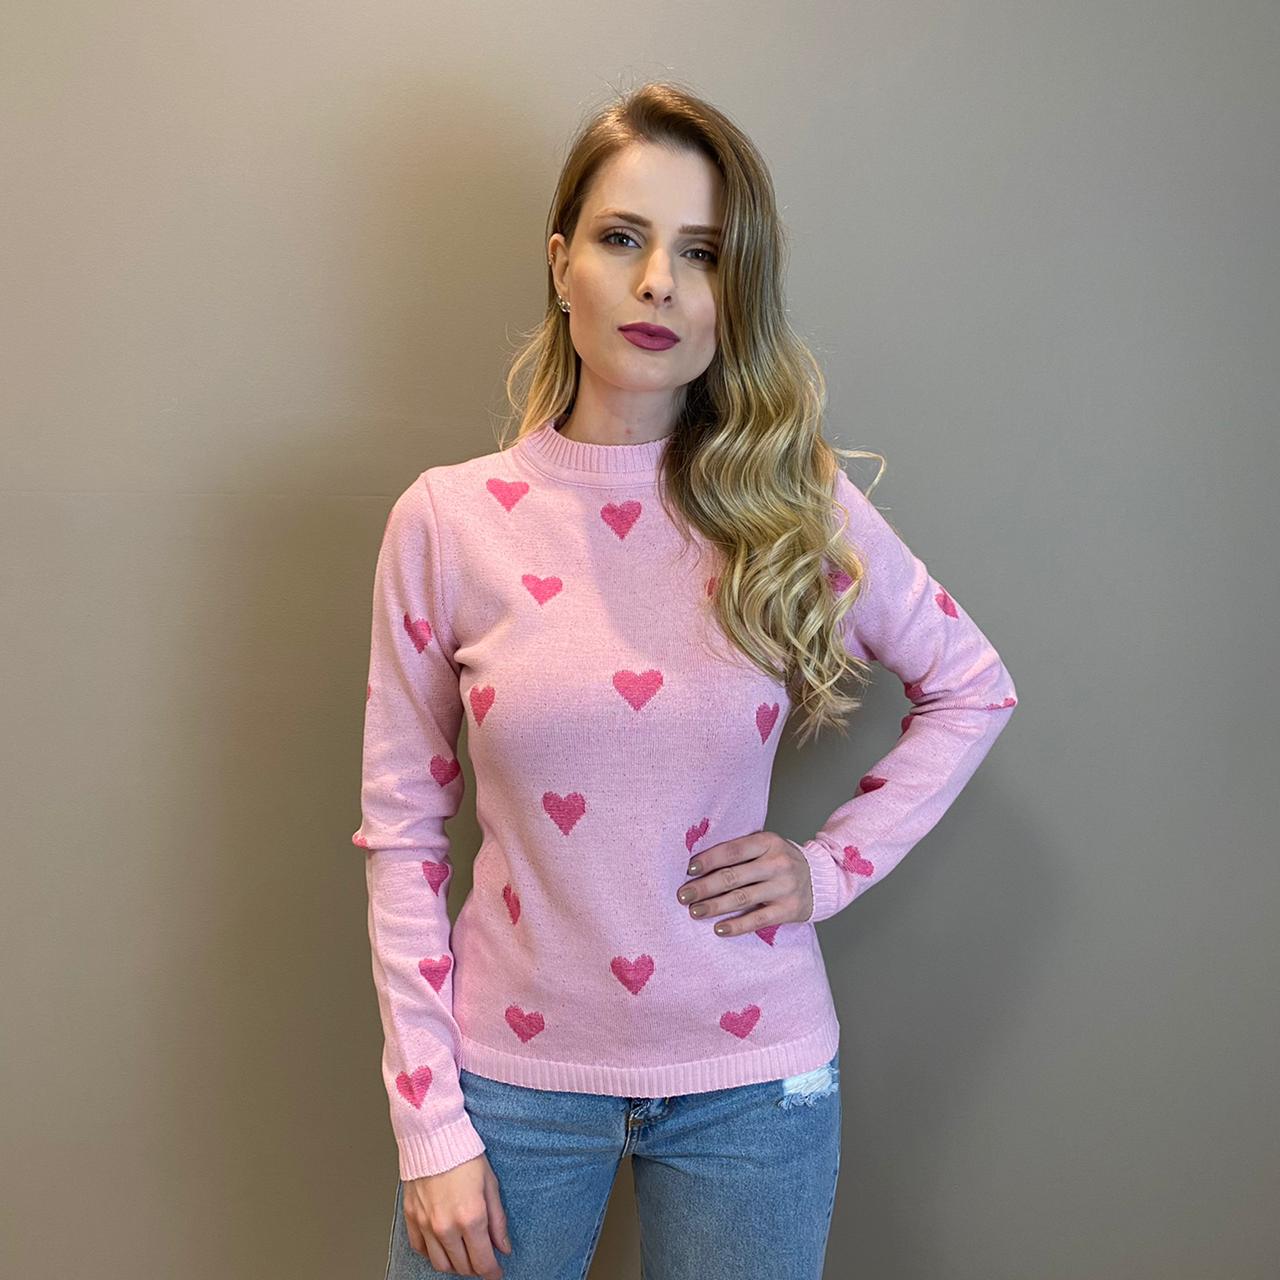 Blusa tricot corações Rosa - 